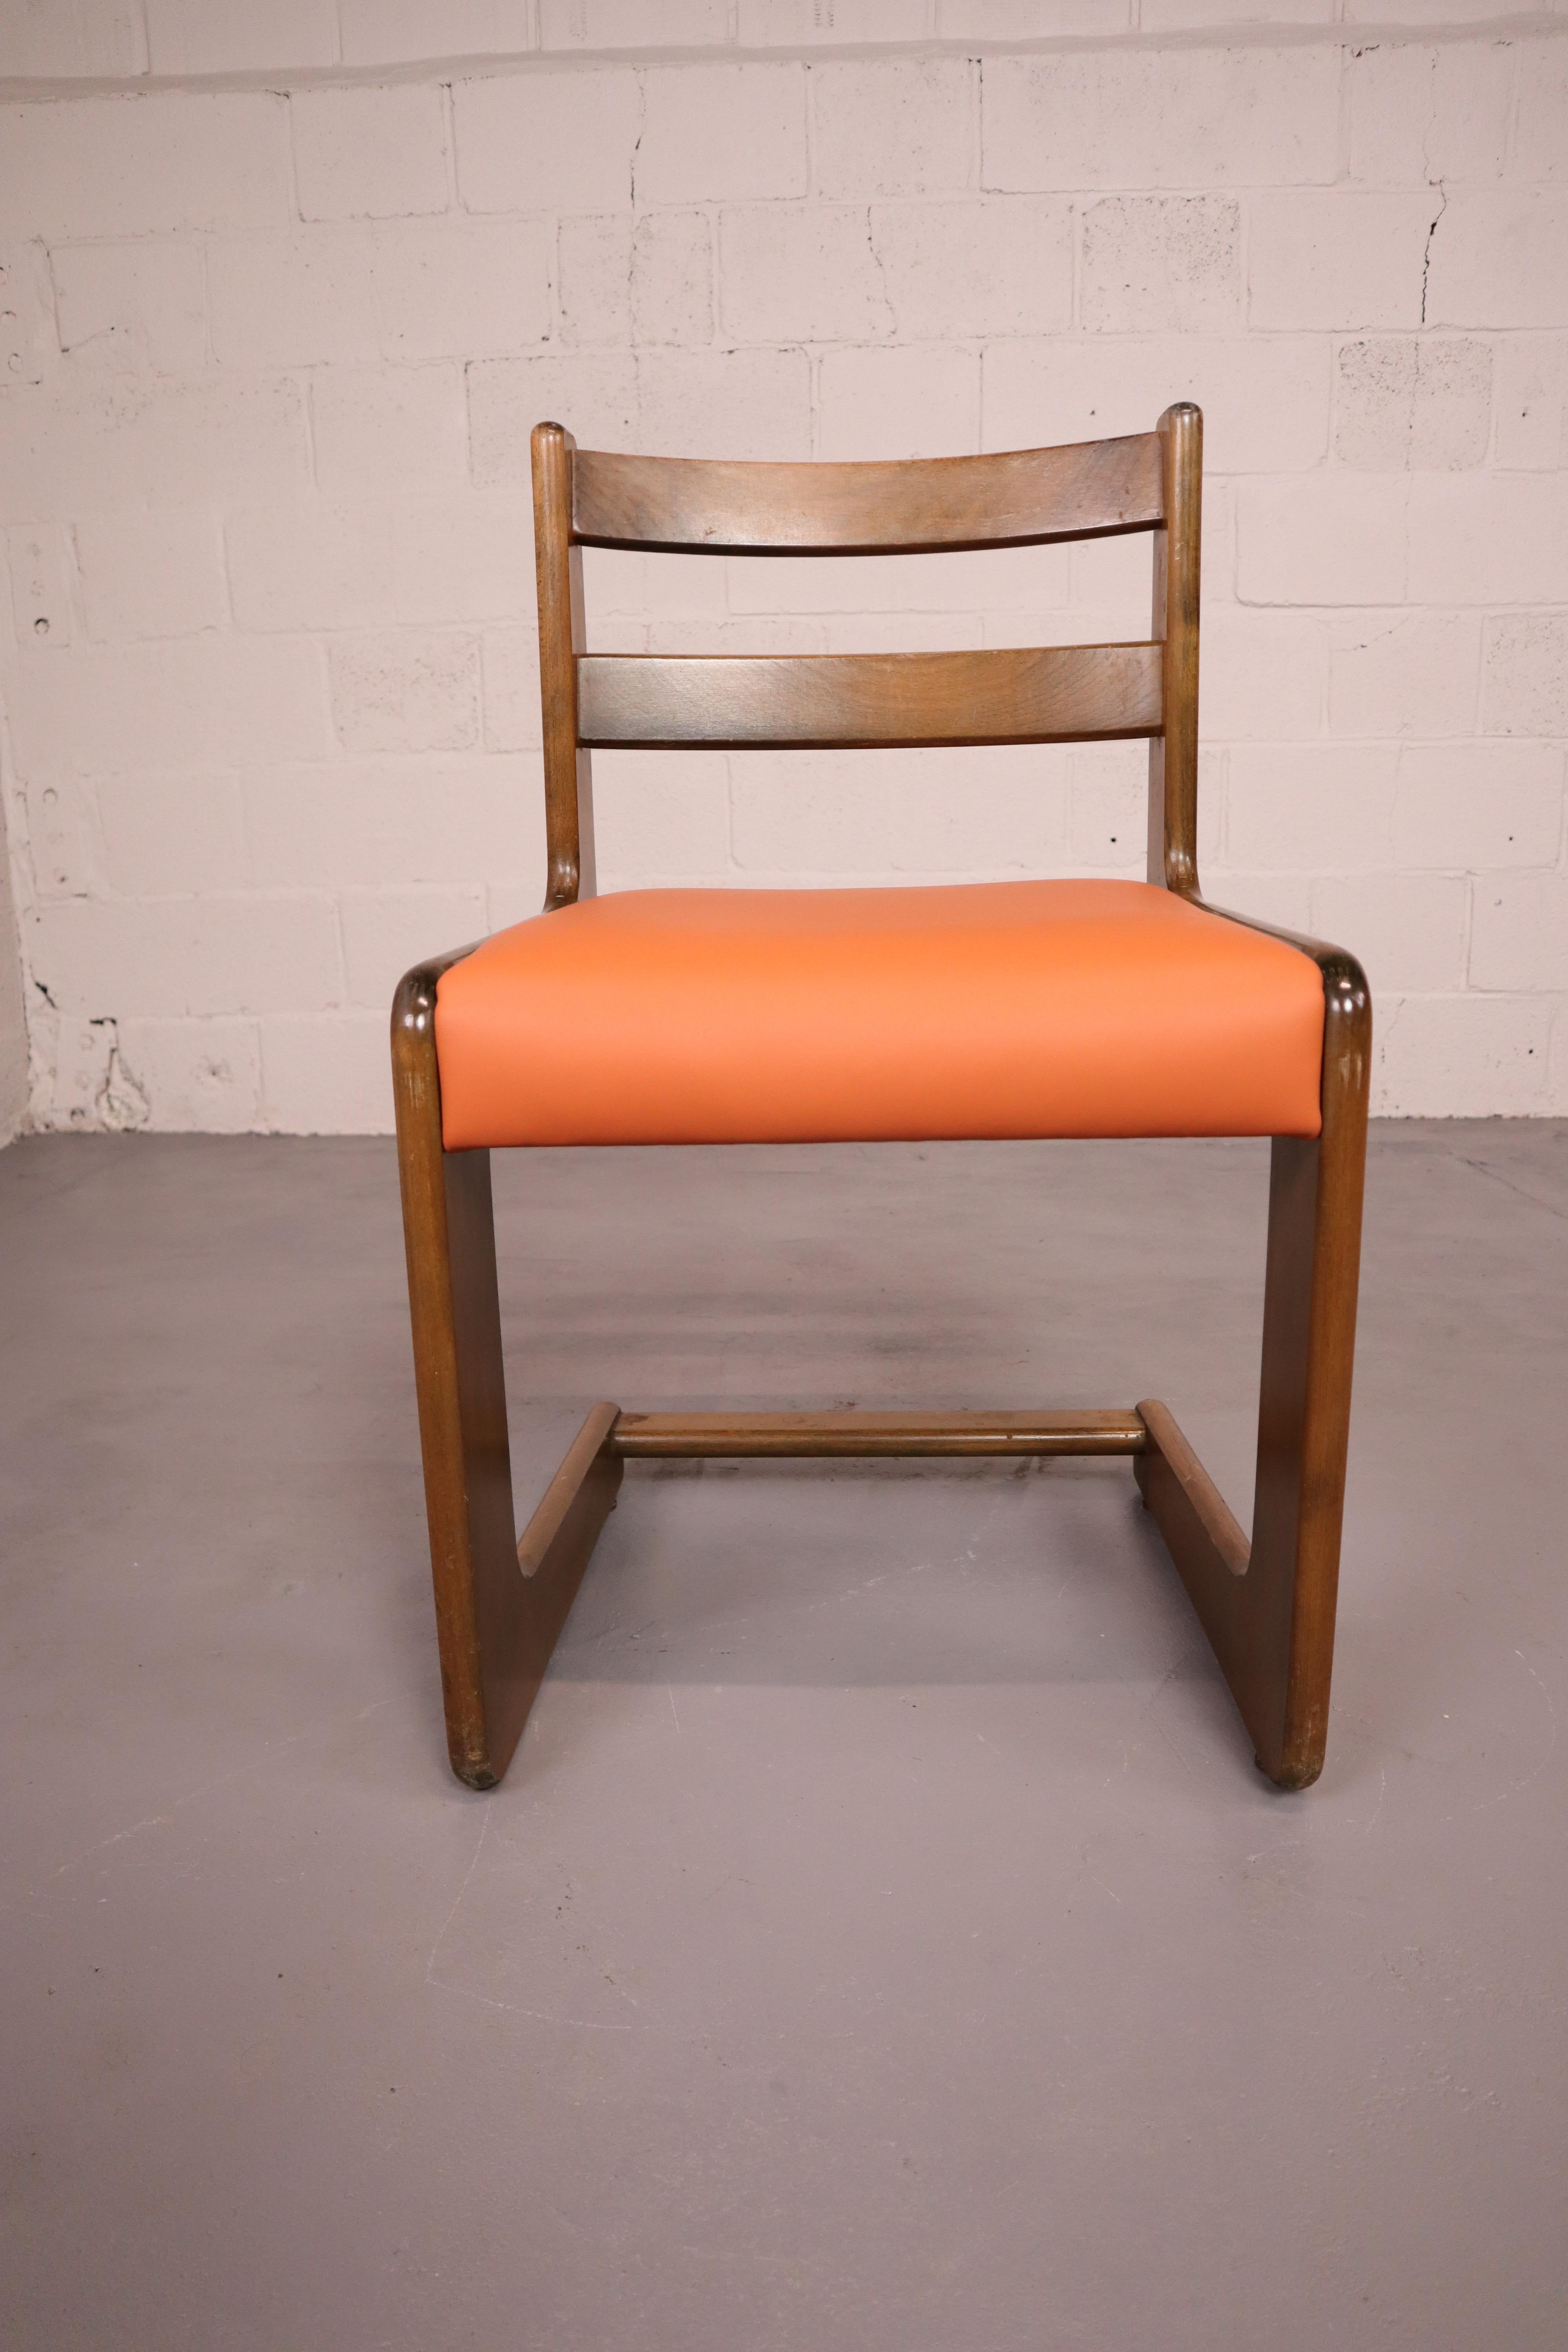 Freischwingende Stühle von Casala aus Leder und Buchenholz, 1970er Jahre (Moderne der Mitte des Jahrhunderts)